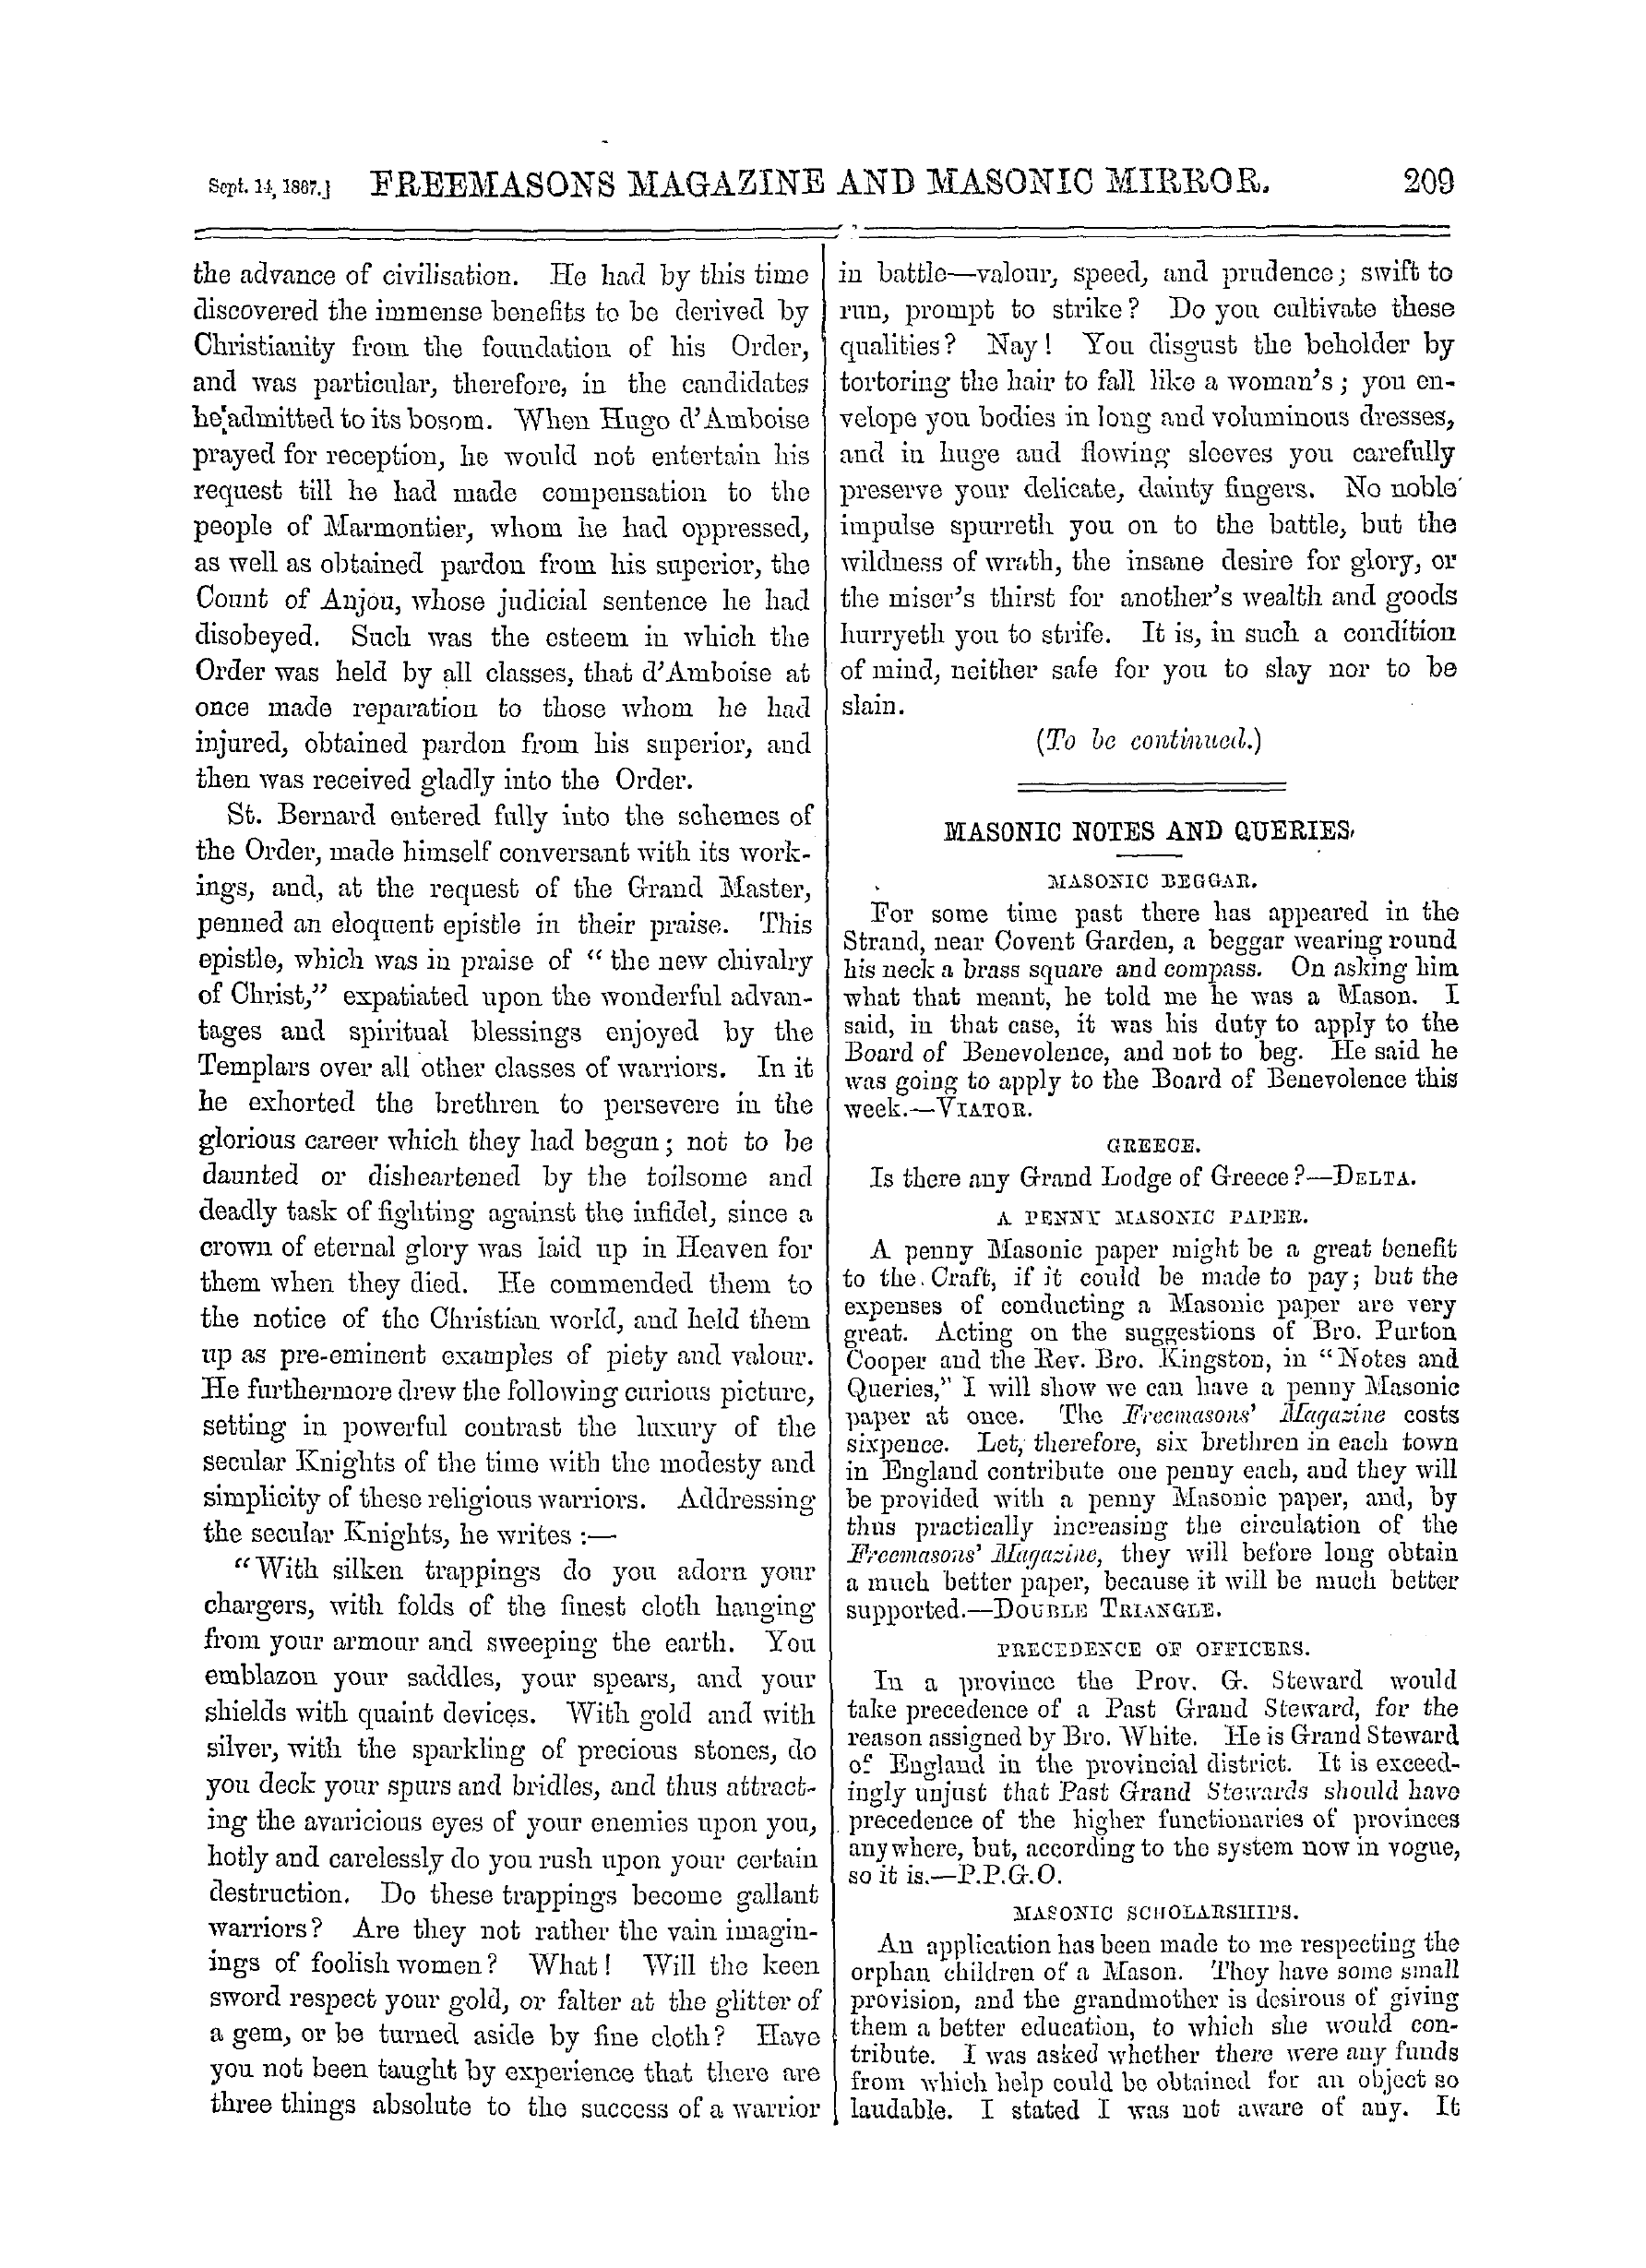 The Freemasons' Monthly Magazine: 1867-09-14: 9